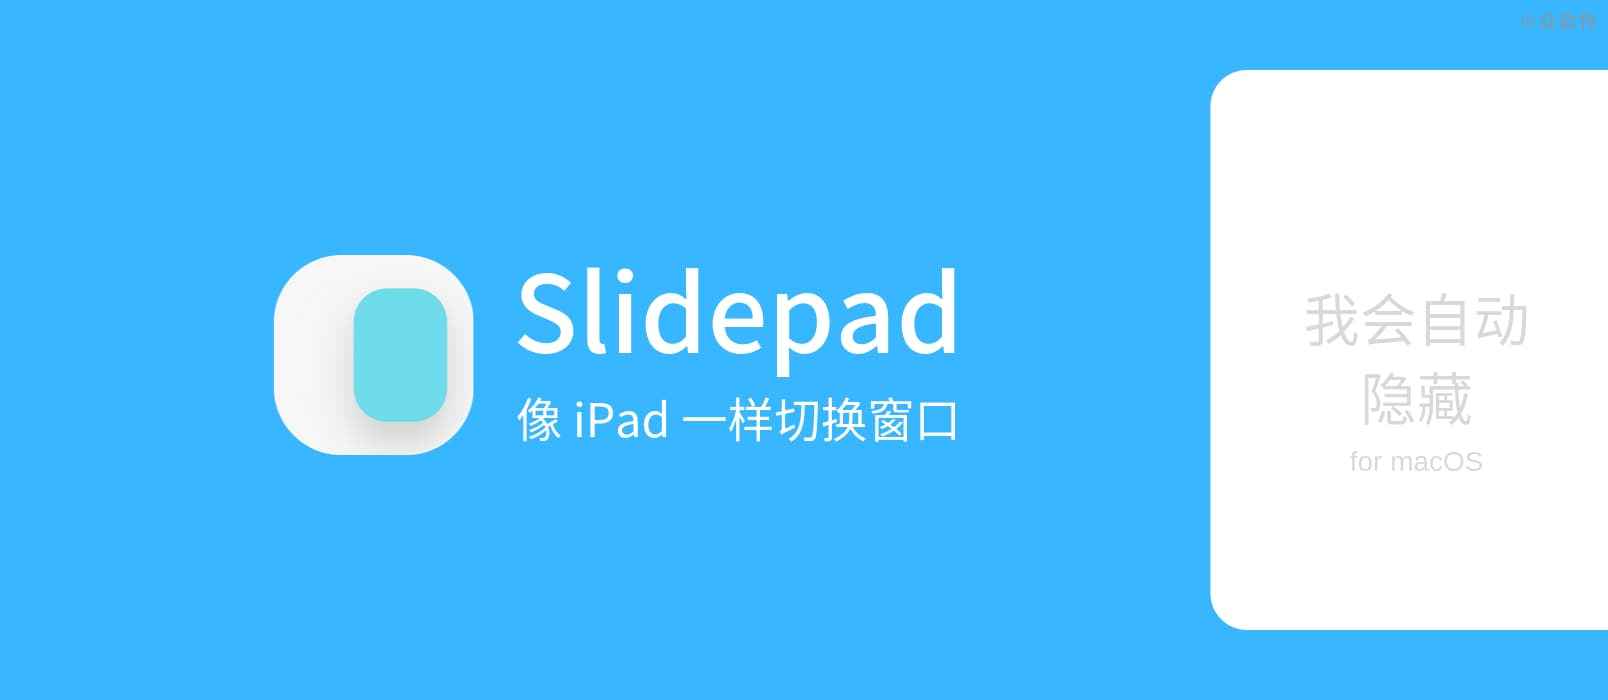 SlidePad - 能吸附在屏幕右侧，自动隐藏的迷你浏览器，像 iPad 一样切换窗口[macOS] 1